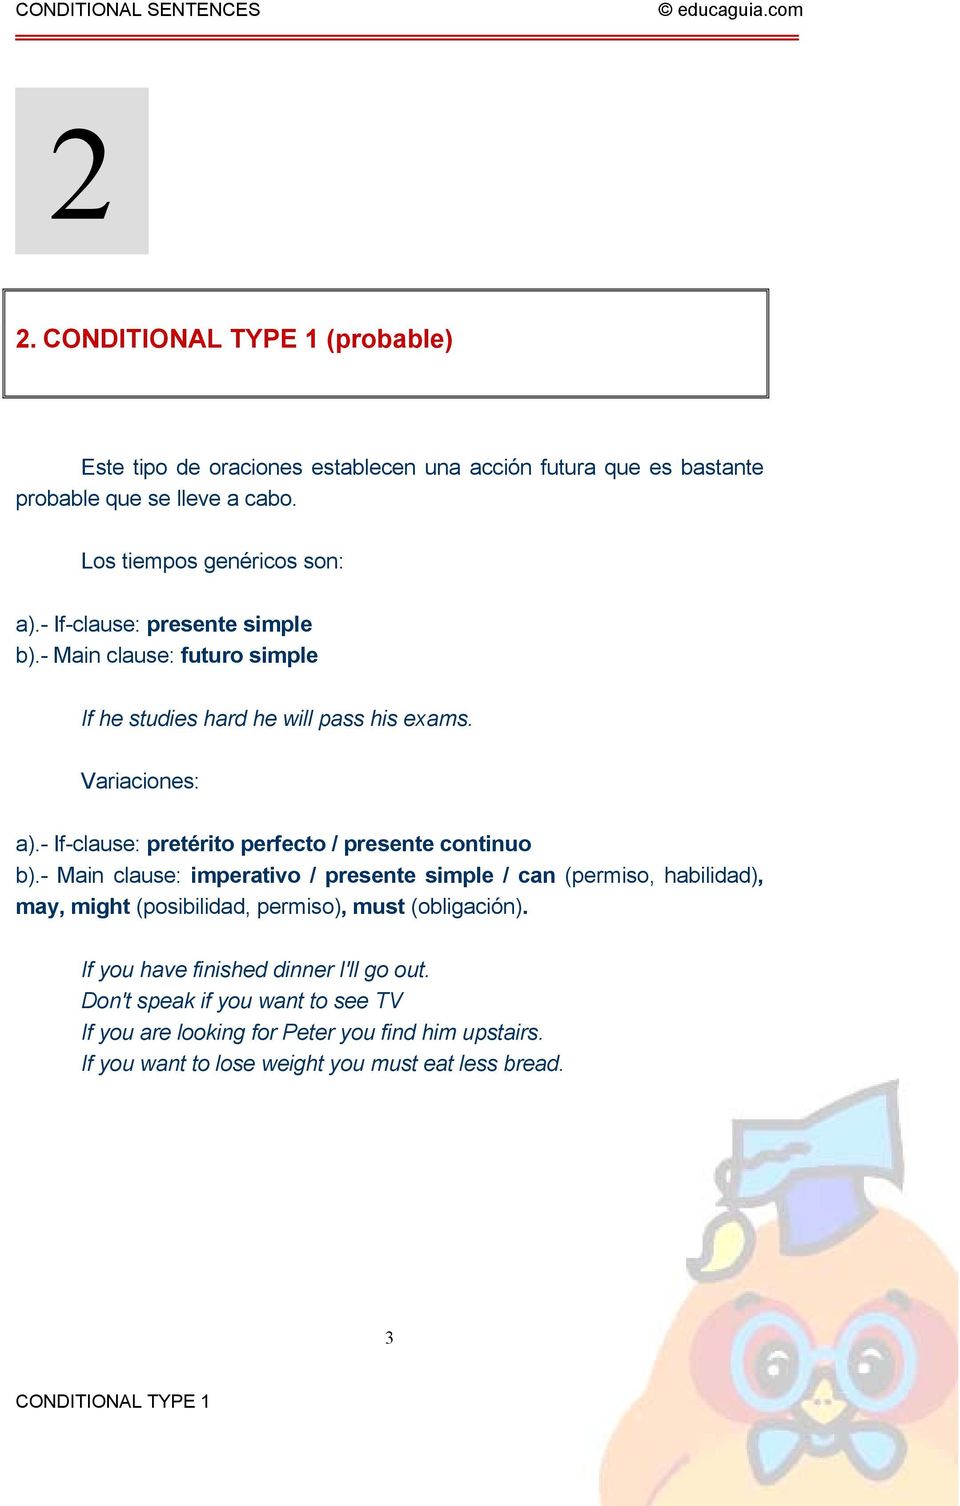 - If-clause: pretérito perfecto / presente continuo b).